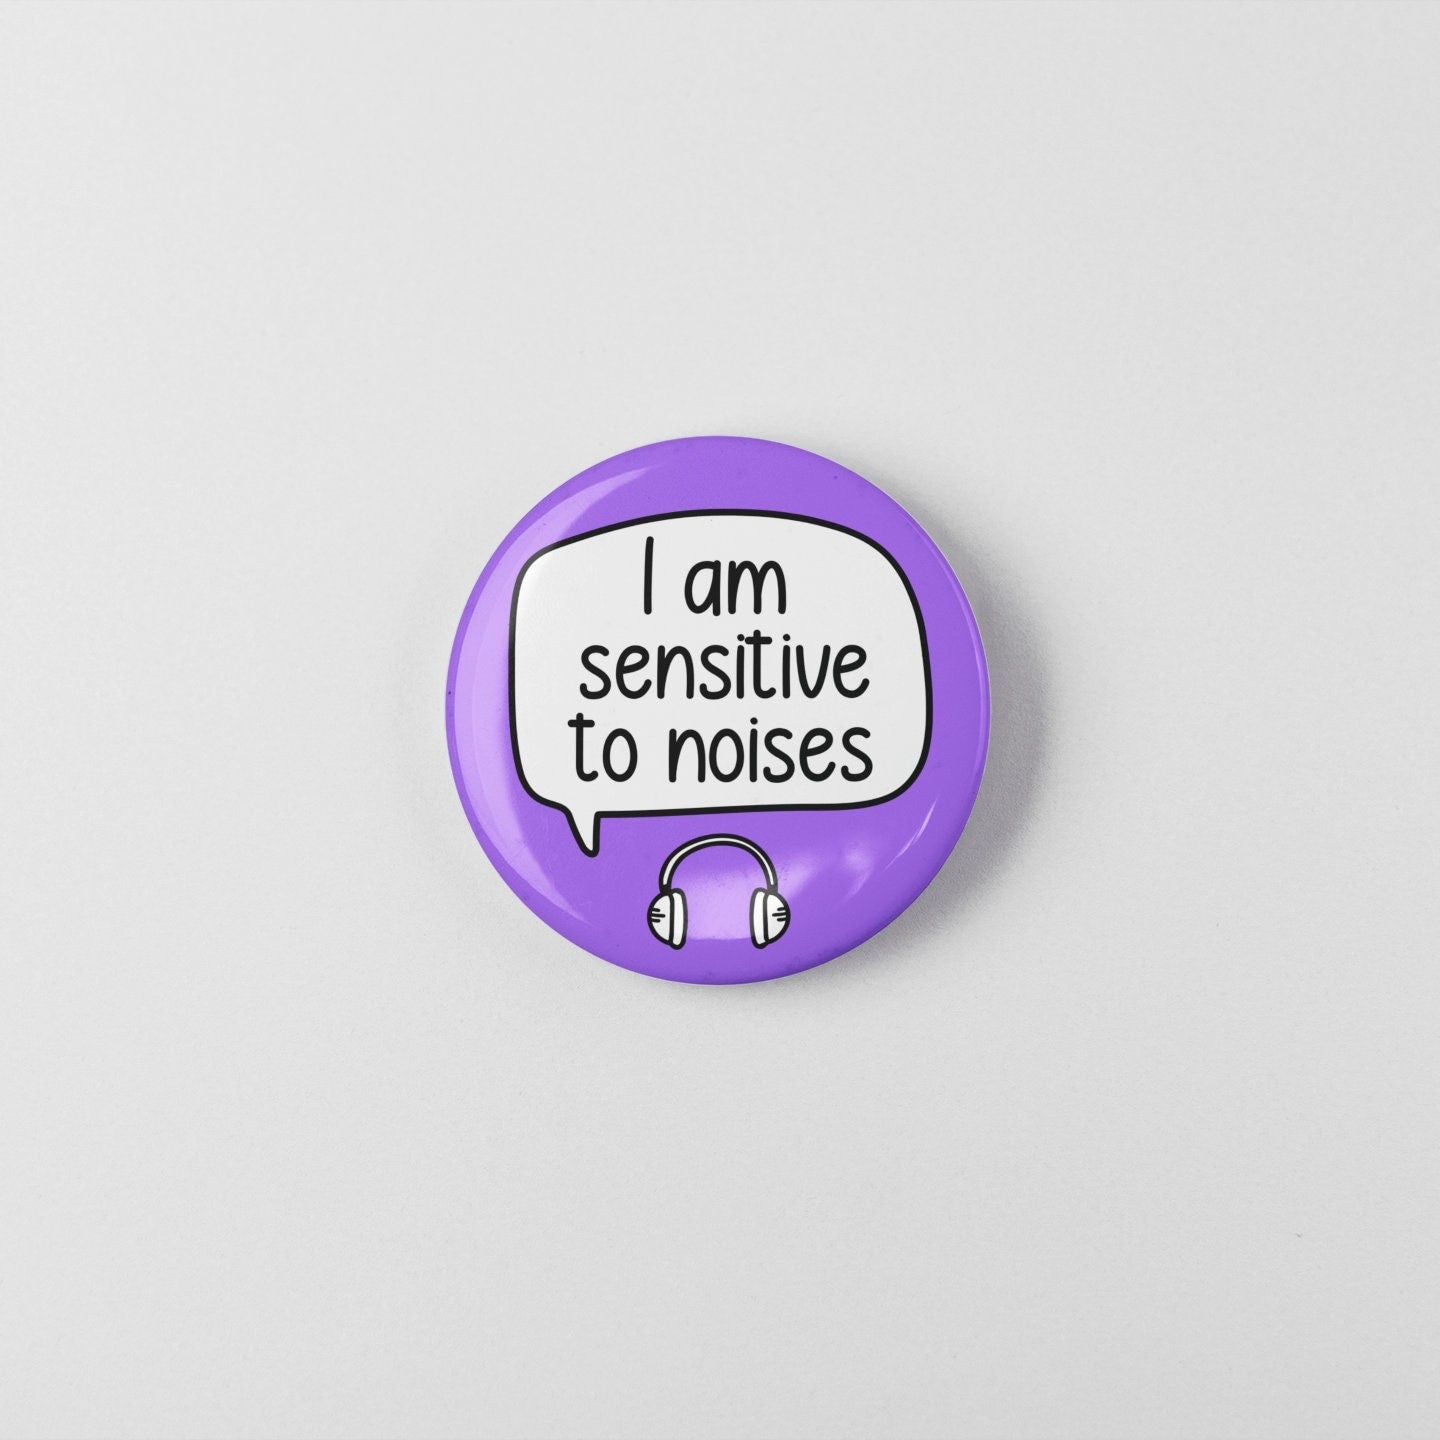 I Am Sensitive To Noises Badge Pin | Sensory Badge - Senses Pin - Sensory overload